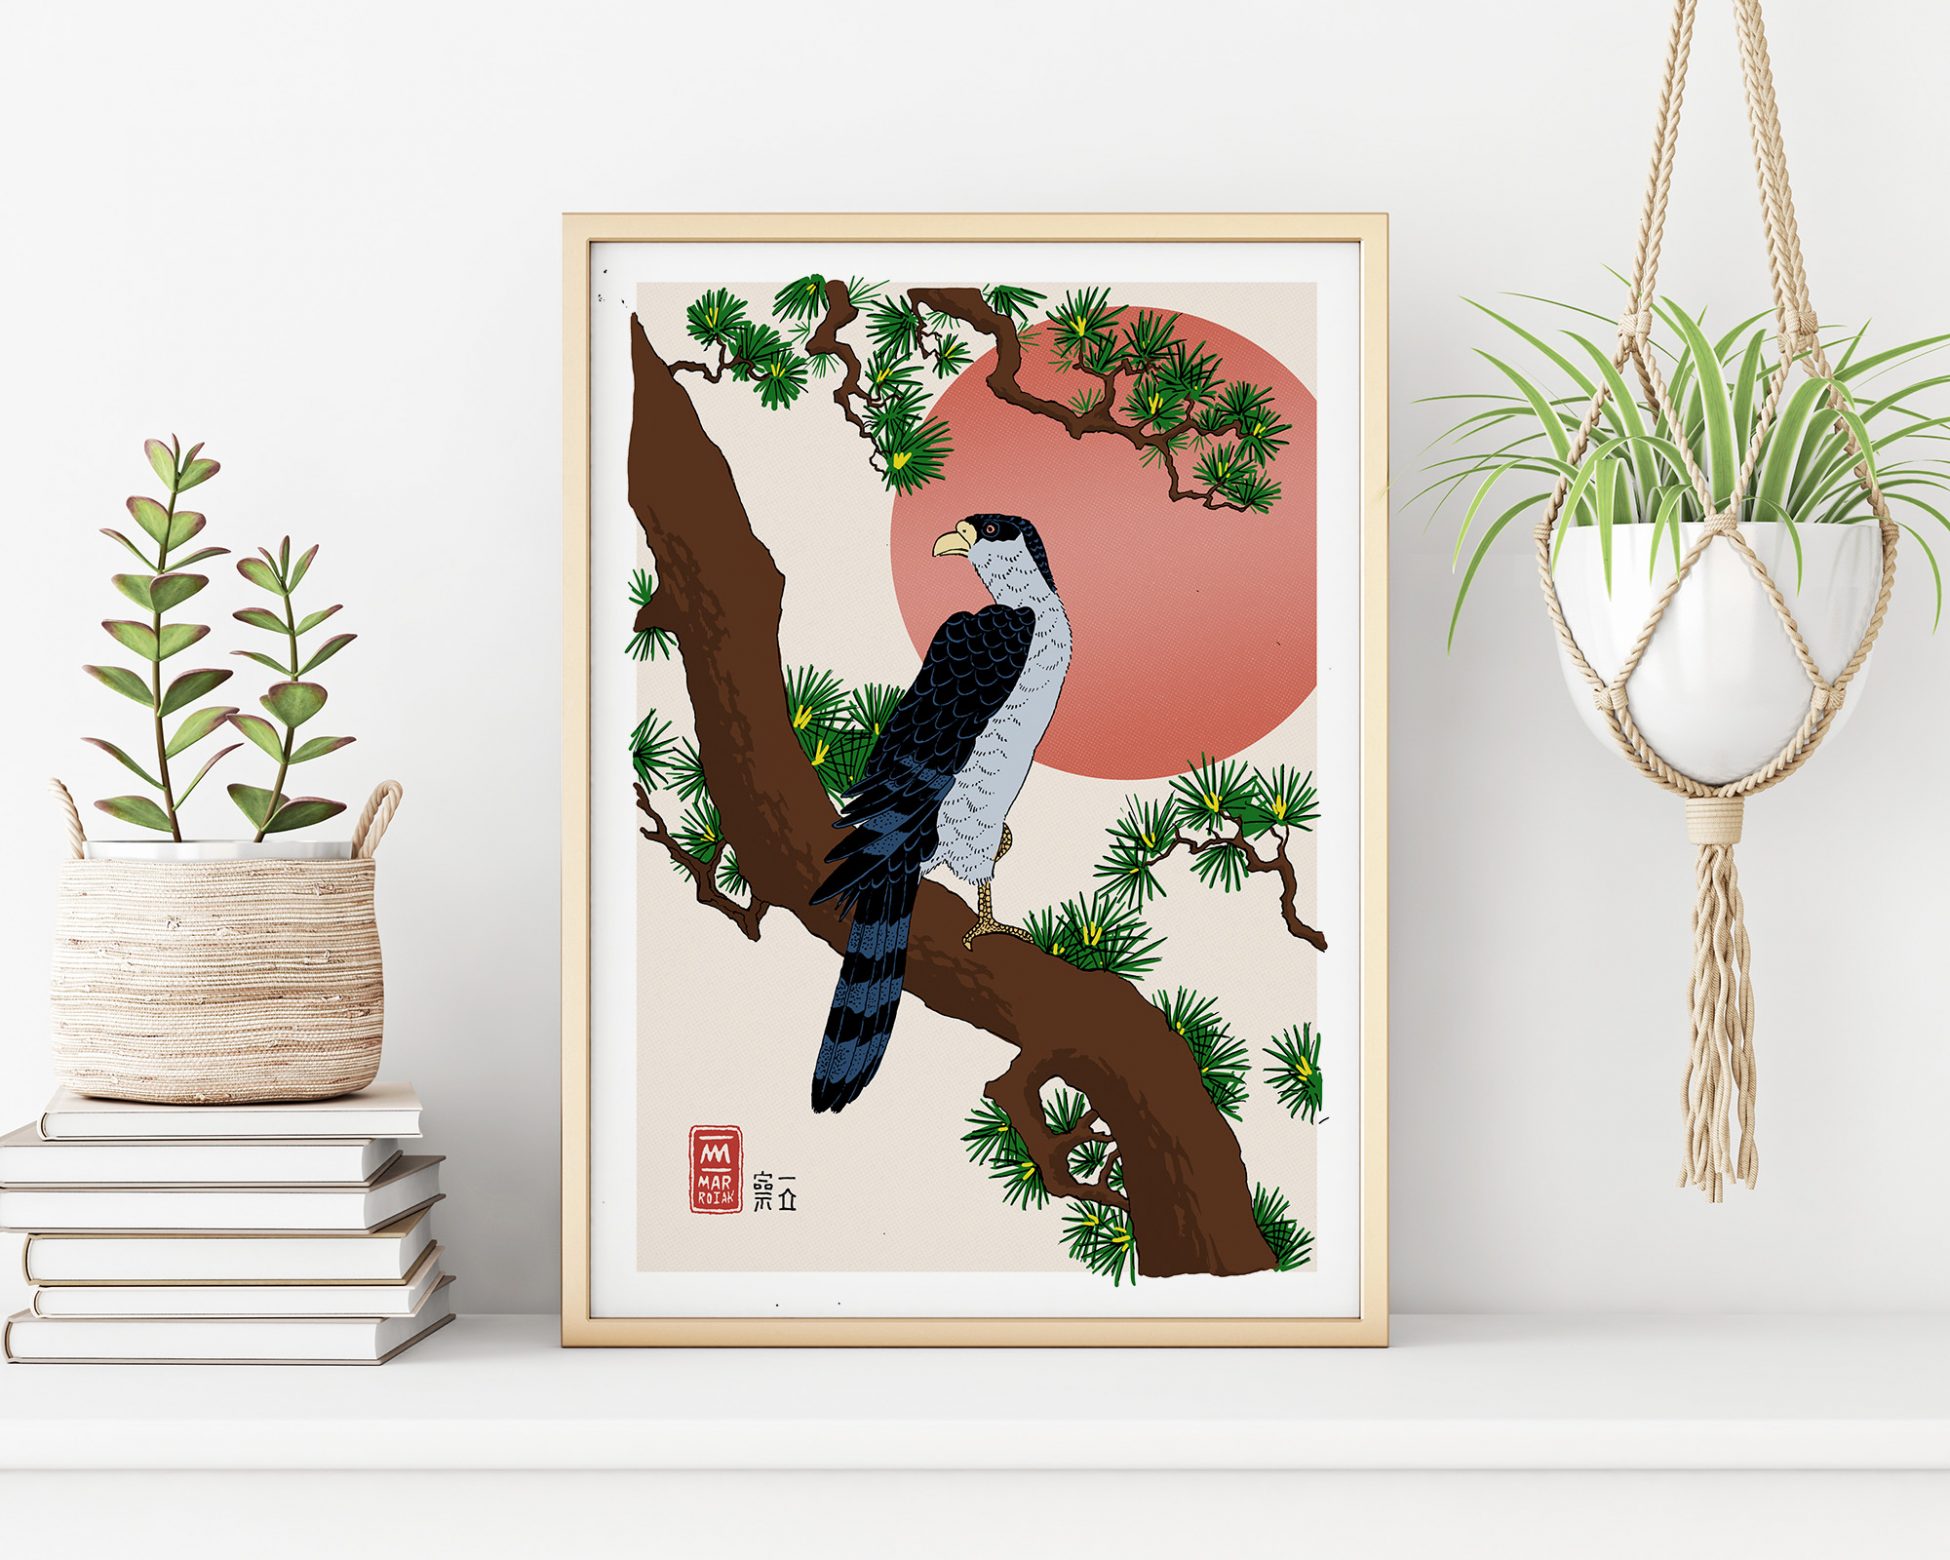 Versión de la obra de arte japonesa Halcón sobre una rama de pino. Ilustración en tinta sobre papel. Arte japonés estampa ukiyo-e